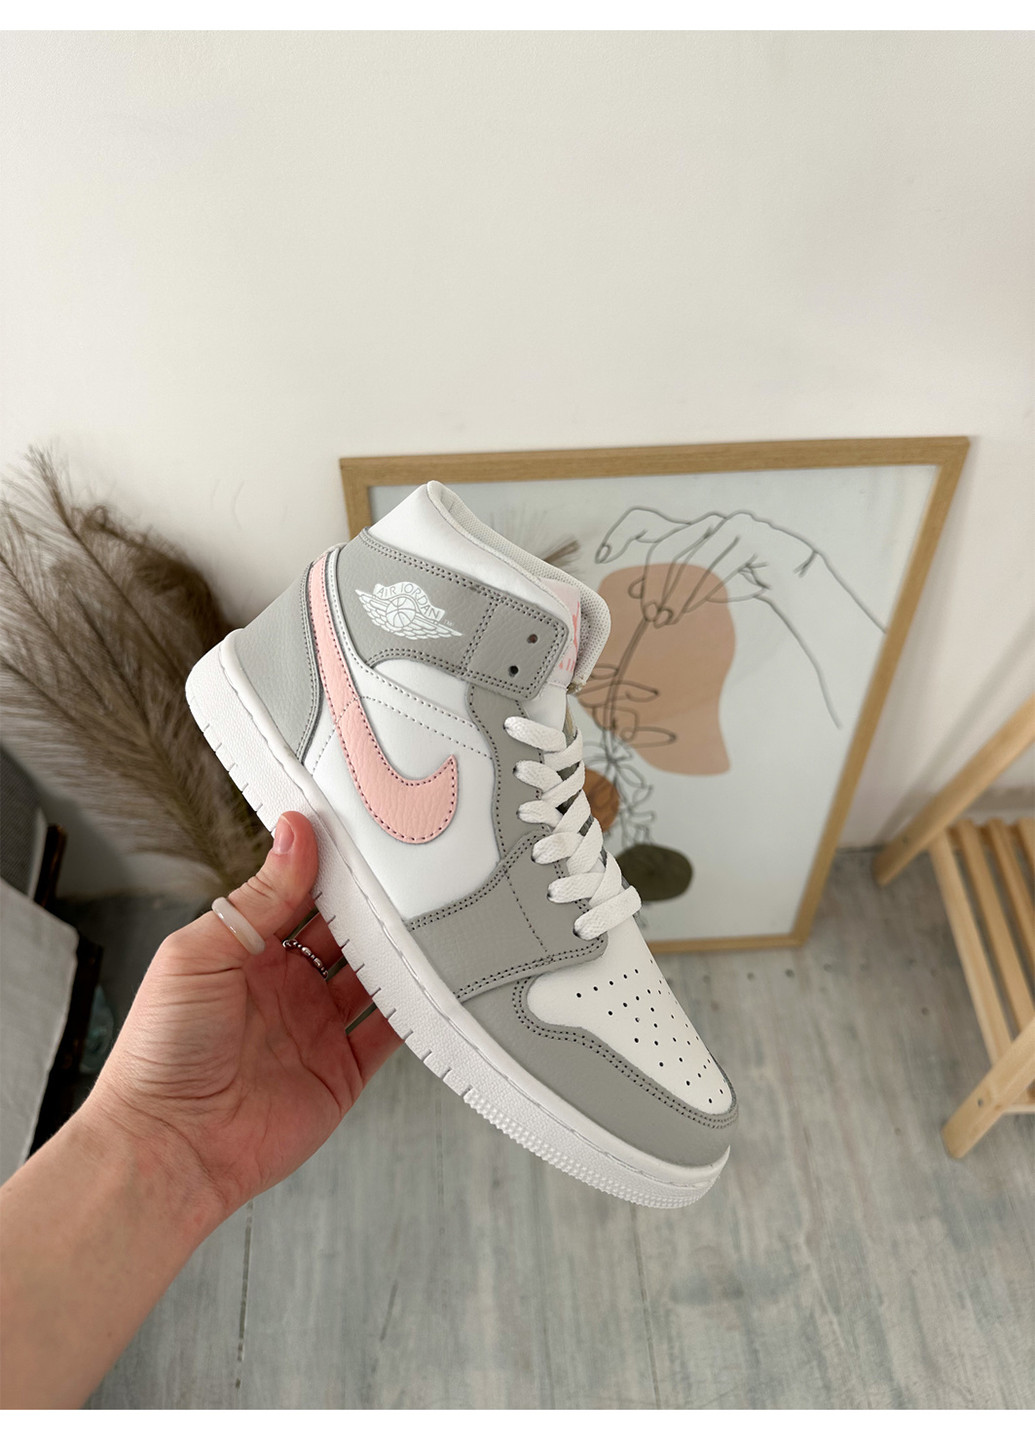 Цветные демисезонные кроссовки Nike Air Jordan Retro 1 Grey Pink